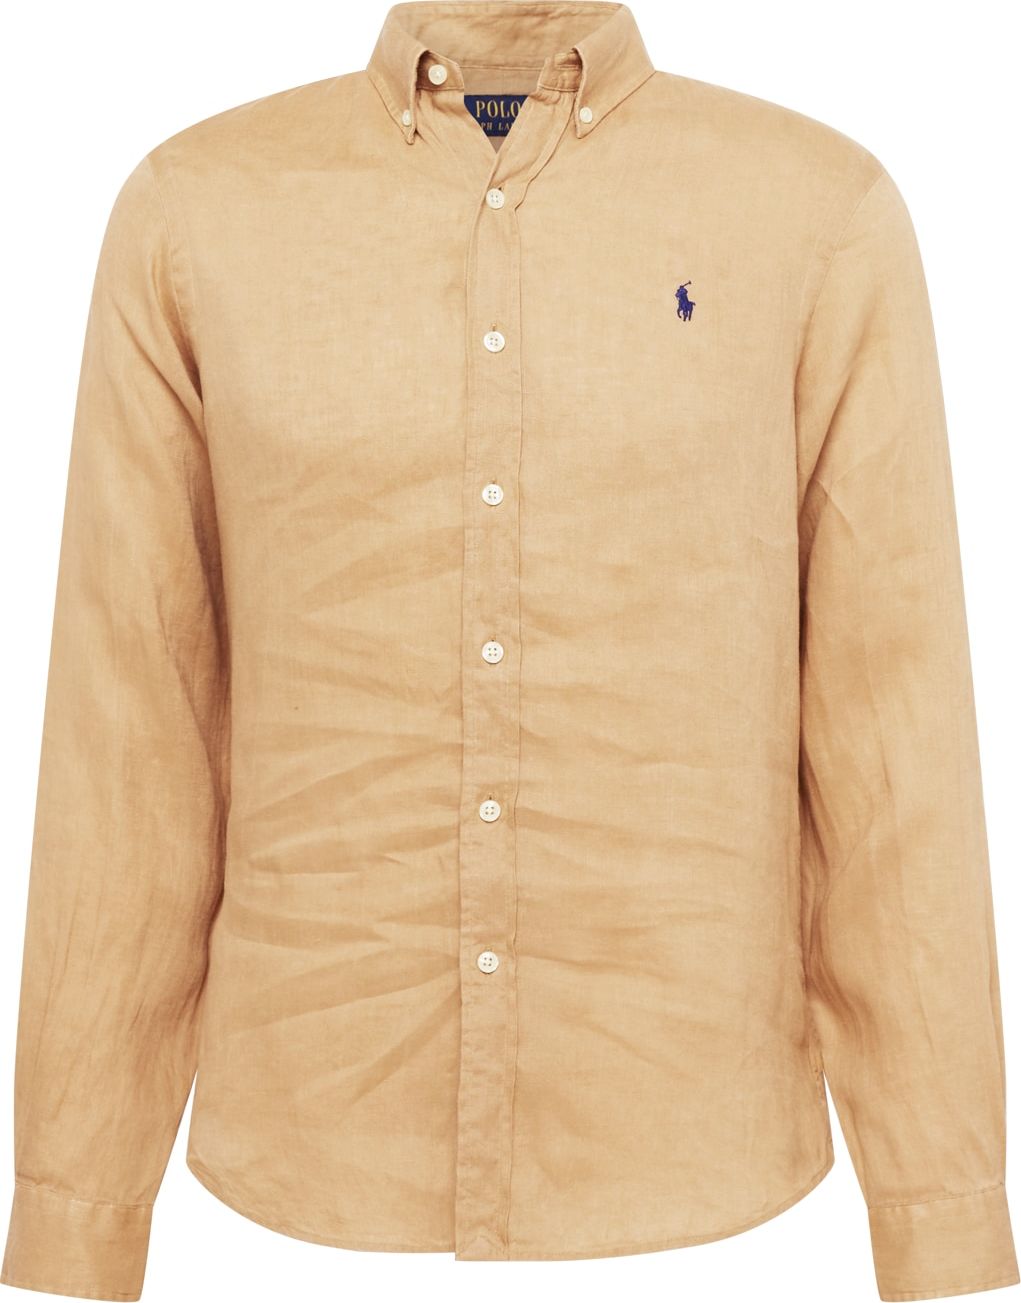 Polo Ralph Lauren Košile písková / námořnická modř